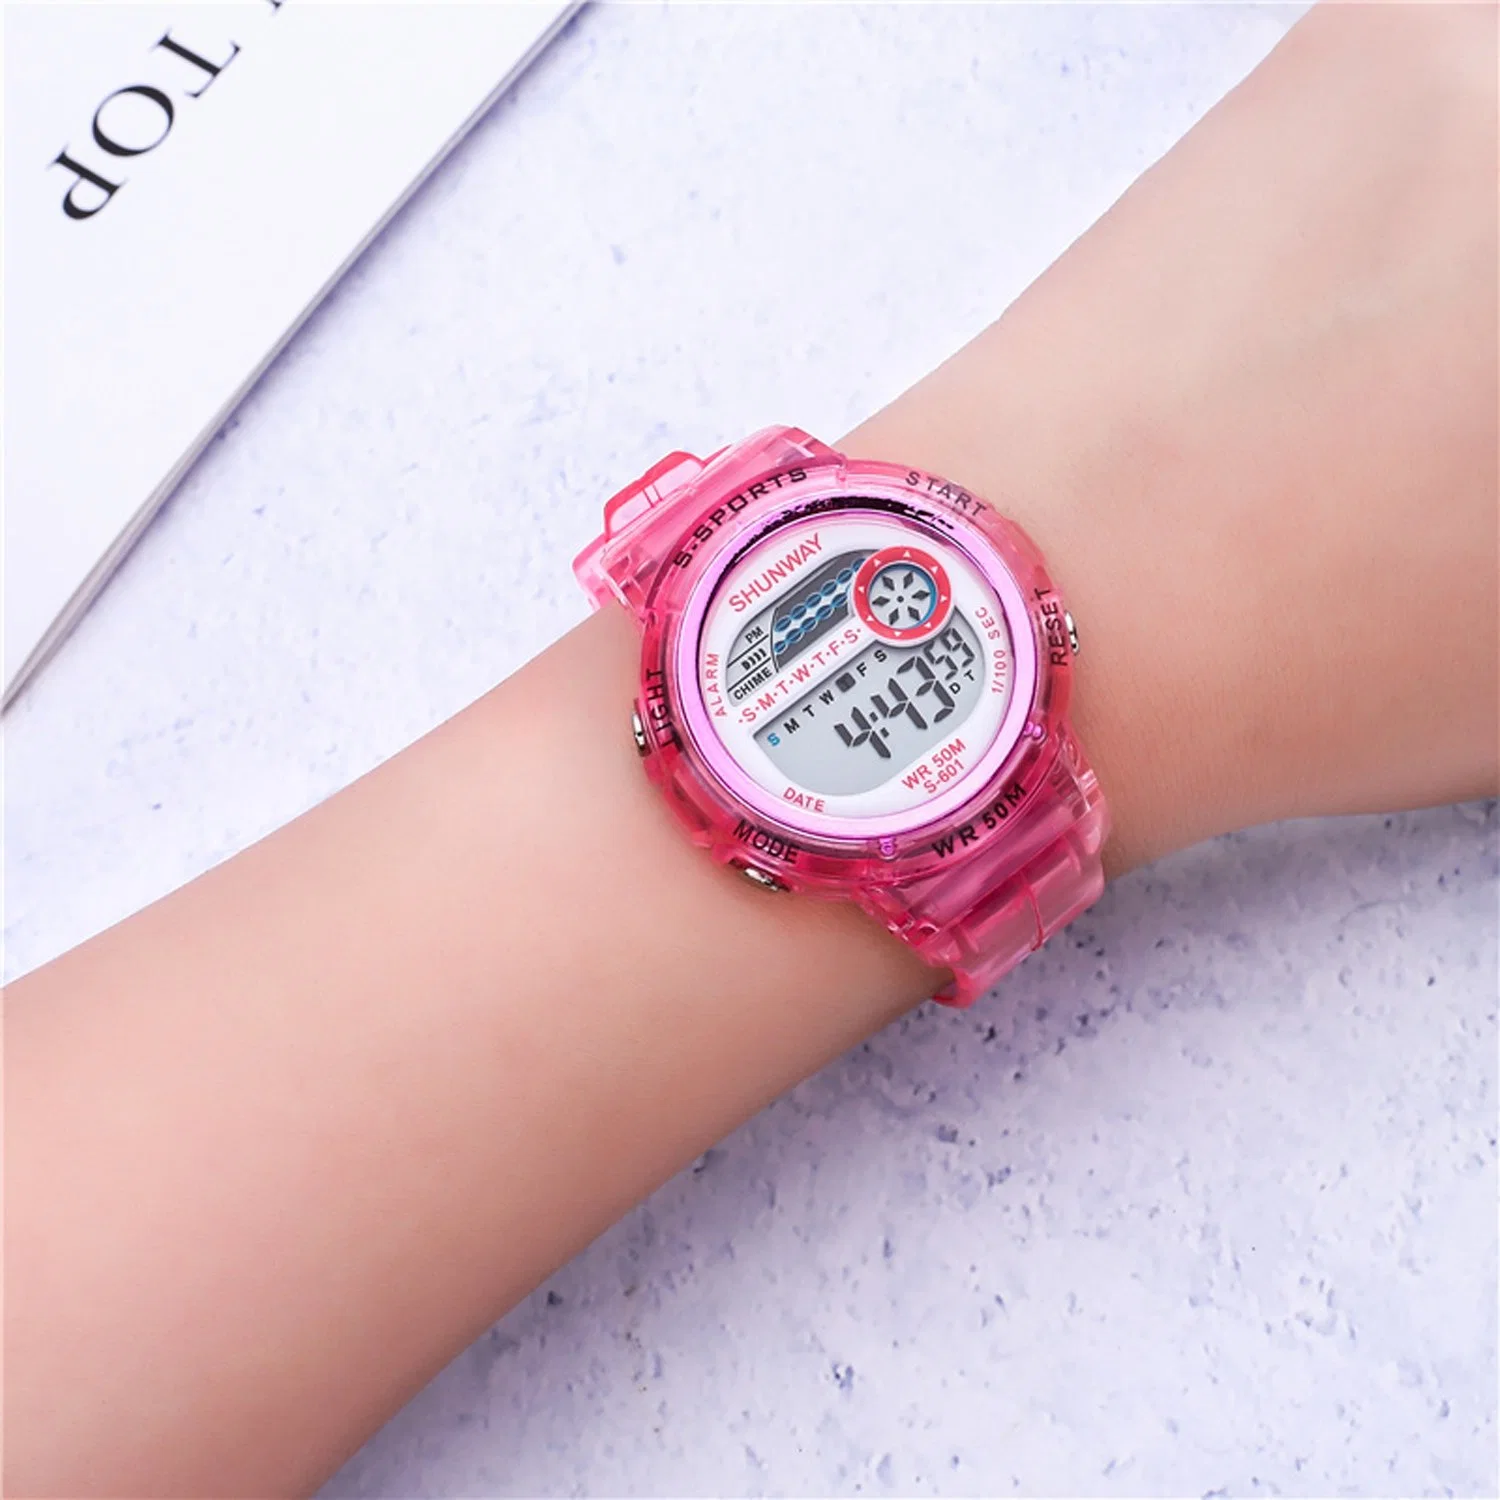 Reloj digital Mujer Reloj Lady Watch niños Reloj Luz LED Ver 5 ATM Waterproof Watch Sport Watch Reloj muñeca analógico Reloj digital